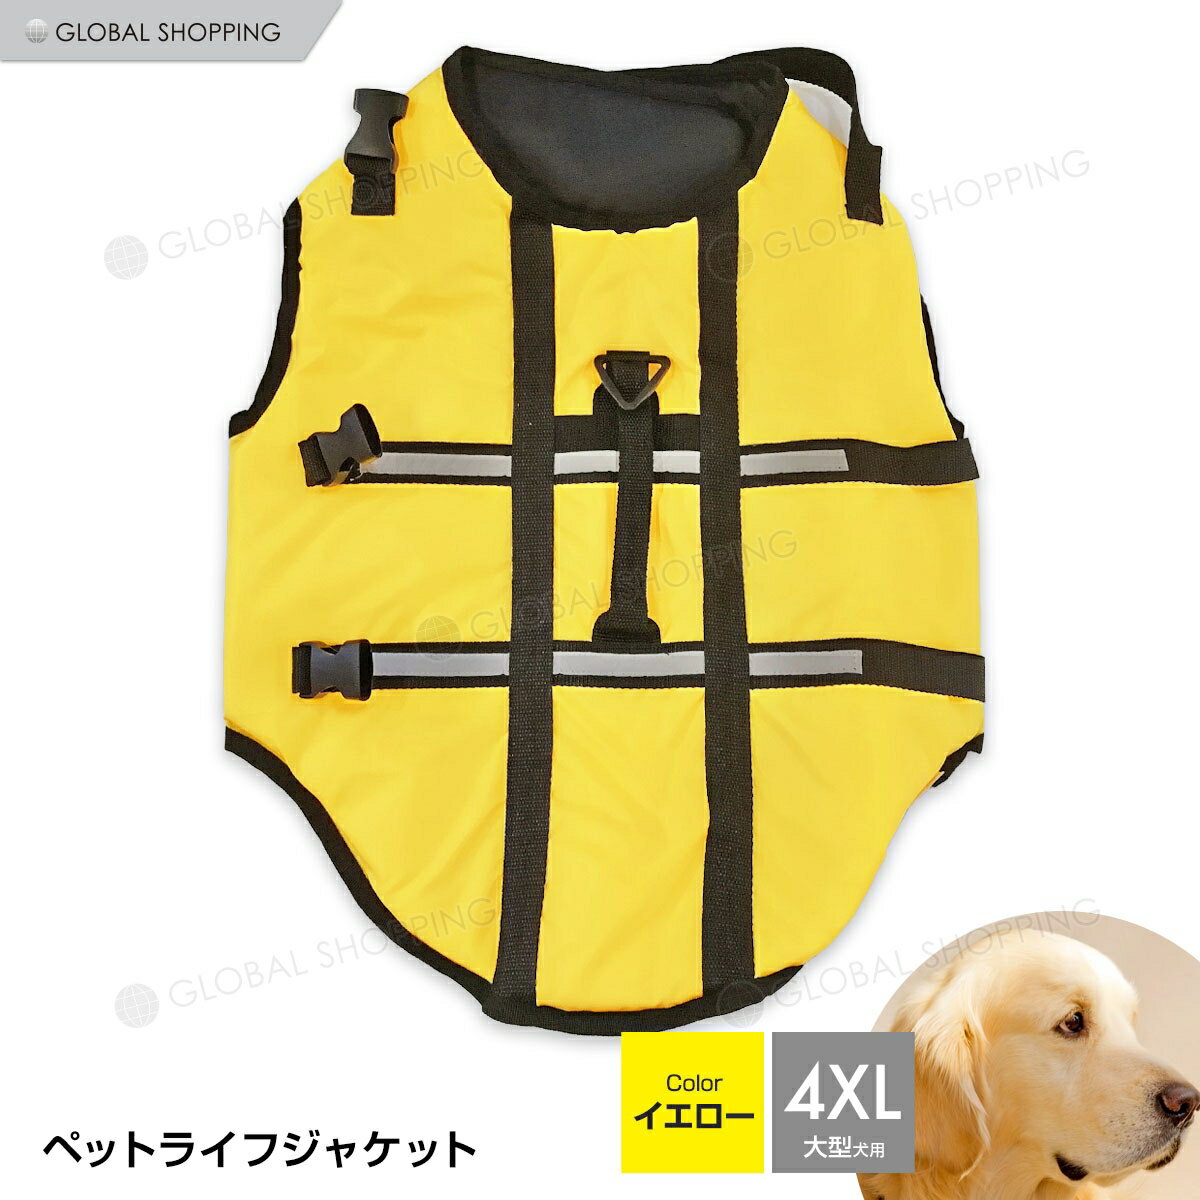 愛犬にライフジャケットを着て一緒に水遊び！！ 流れが強くなったり、水深が急に深くなったりで海や川には危険がいっぱい！ 水遊びが大好きなワンちゃんに装着して楽しく安全に水遊びを楽しみましょう！！ ※ライフジャケットをしていても安全である保証はありませんので、愛犬をちゃんと見守ってあげてください。 ※サイズは、実寸を測っているため多少の誤差はございます。 ※実商品とPC画面では、多少見た目の色に違いがございます。 サイズ：画像参照 カラー：イエロー